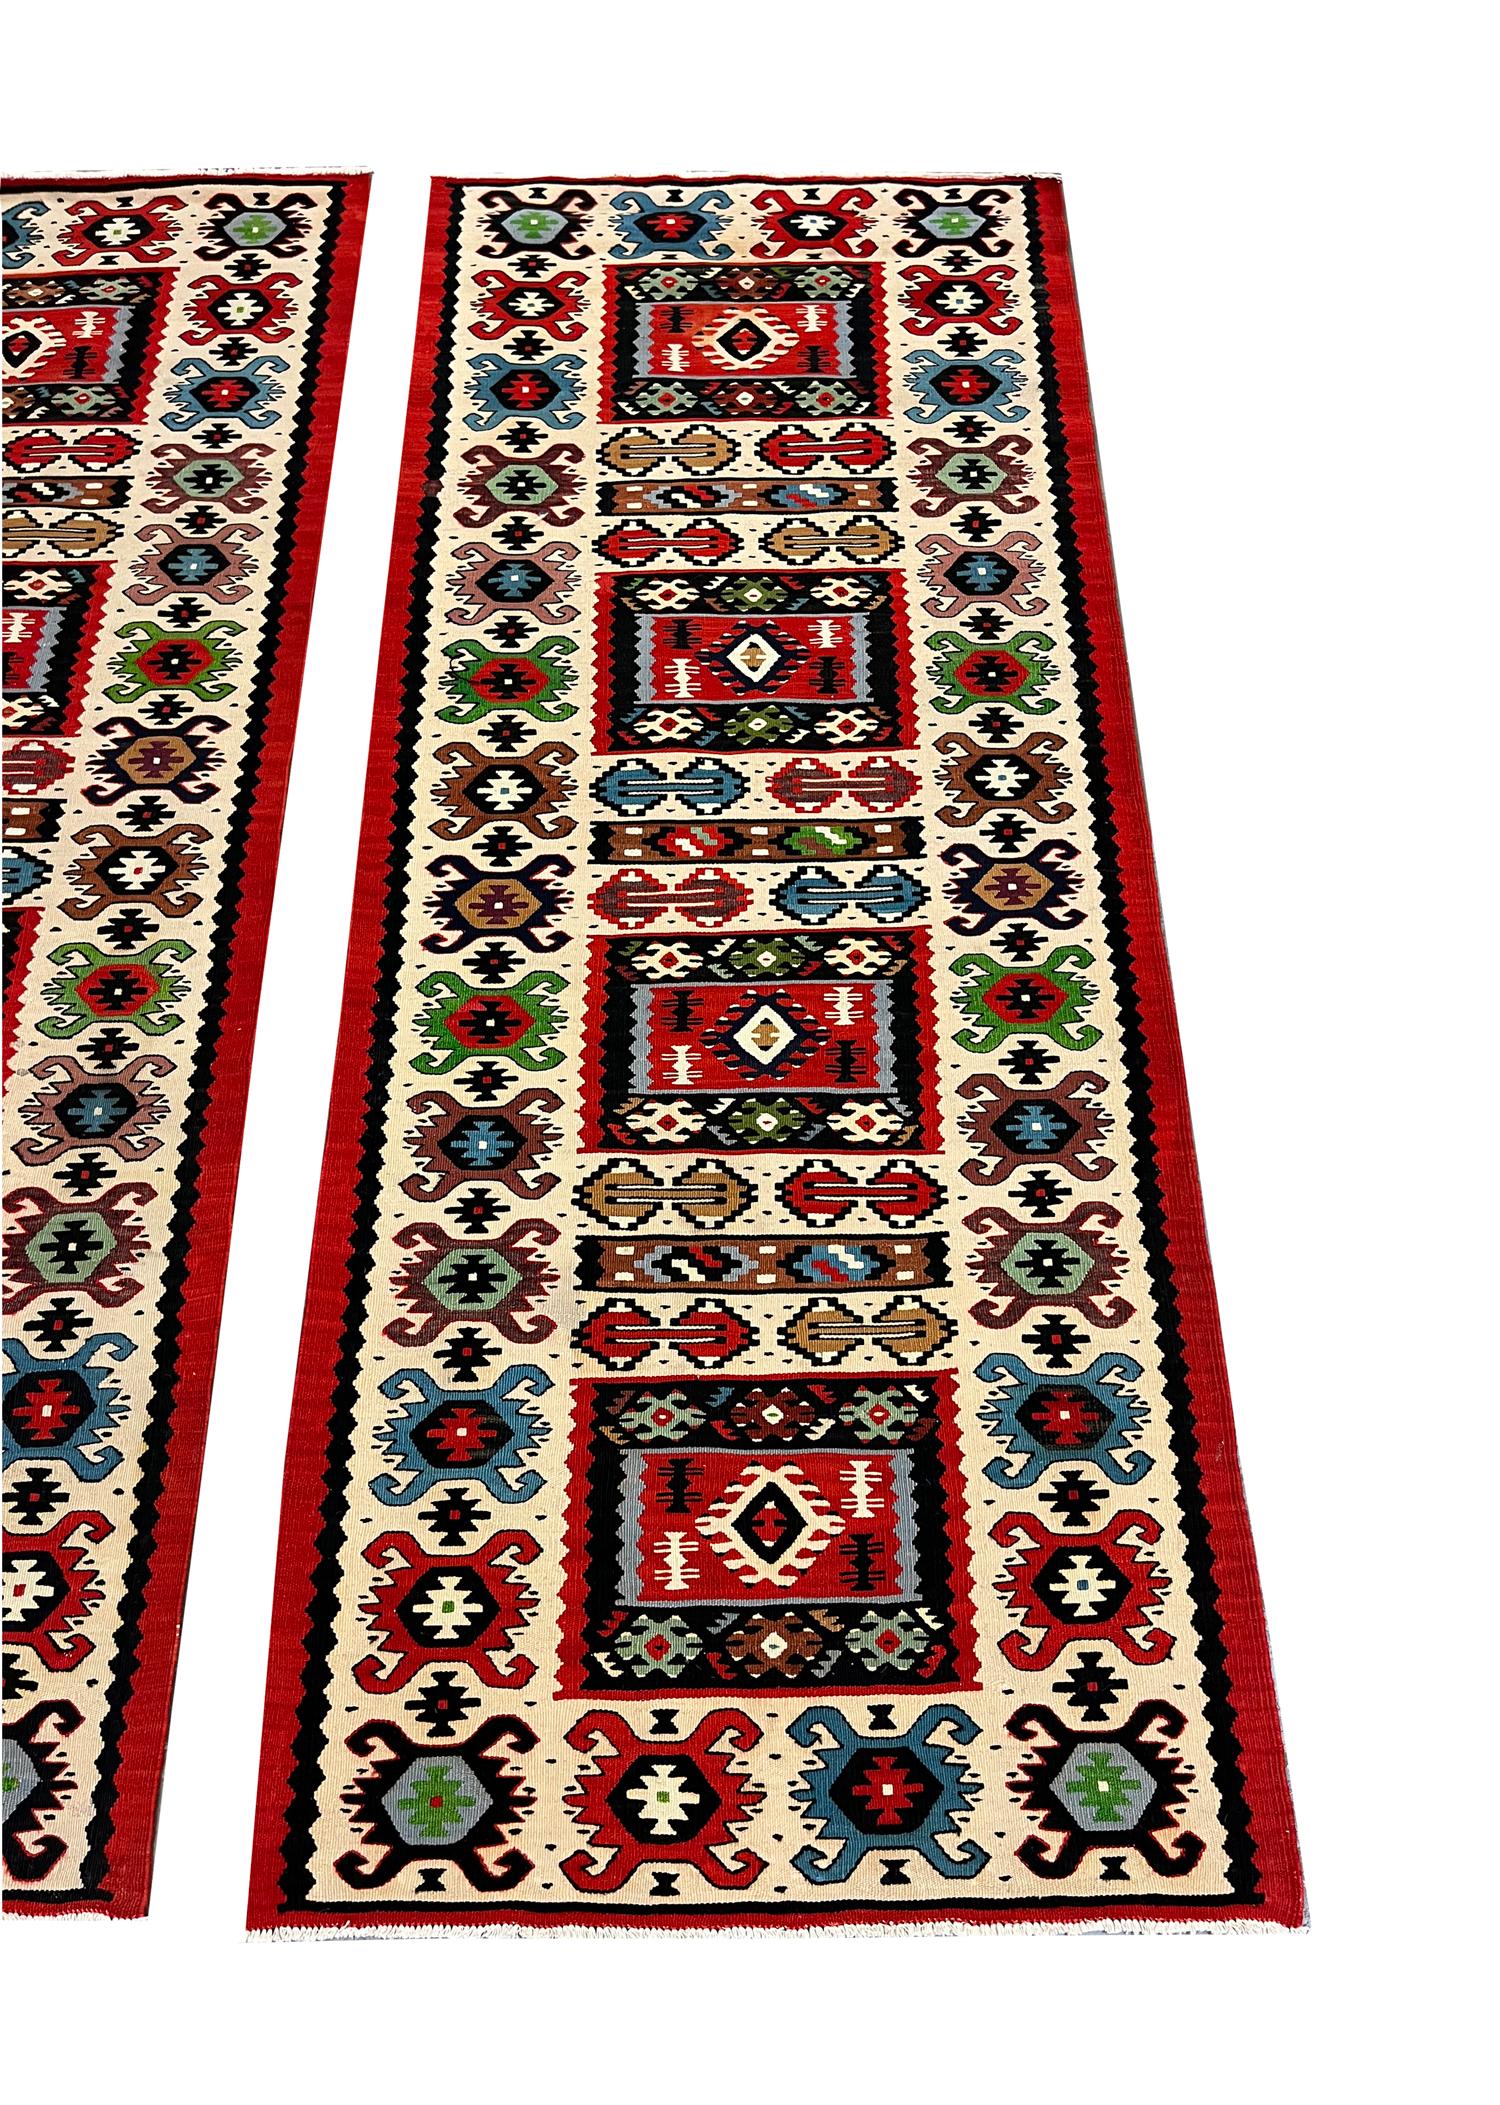 Ces tapis de course Kilim sont des exemples fantastiques de tapis tissés en Turquie dans les années 1970. Le dessin présente un motif répétitif en couches tissé sur un fond crème avec des accents de rouge, vert, bleu, beige et brun. La palette de